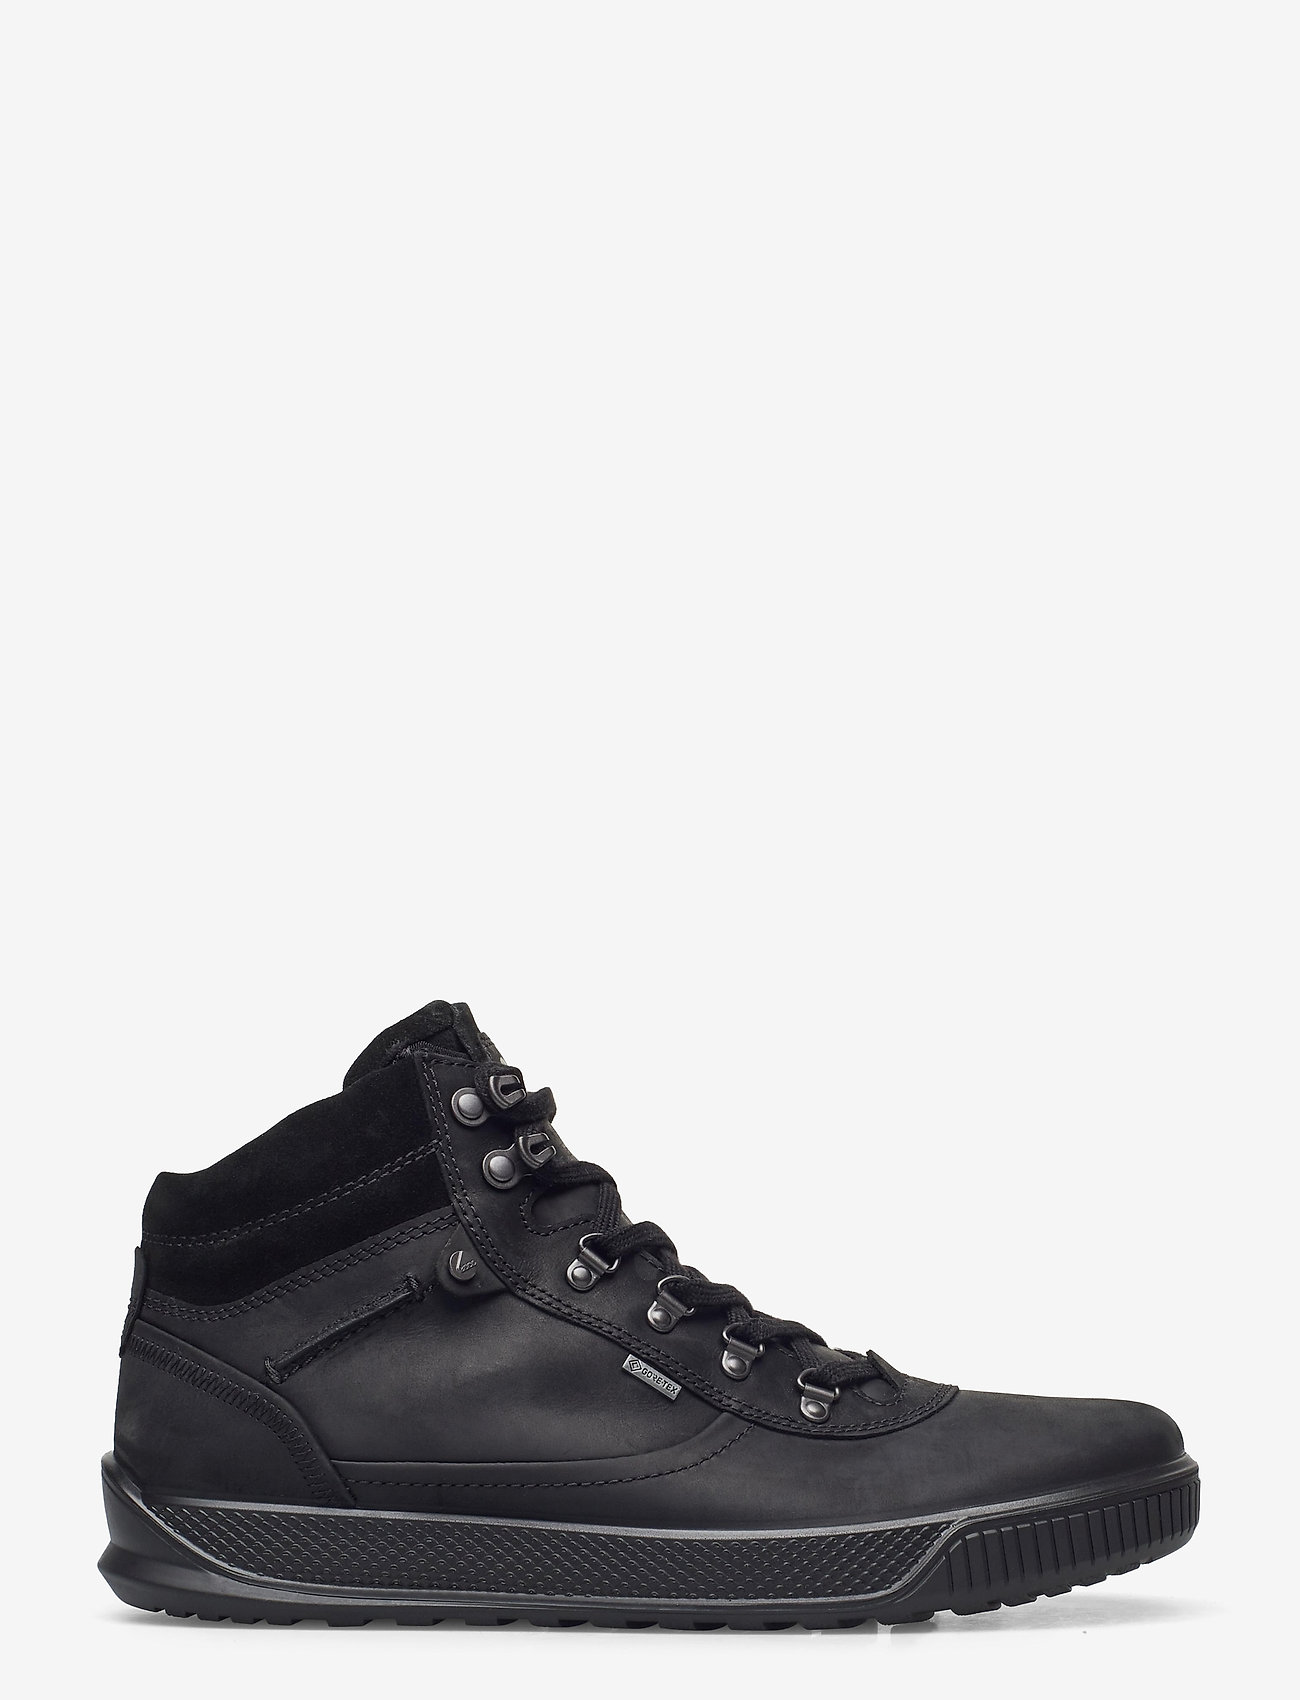 ECCO - BYWAY TRED - höga sneakers - black/black - 1